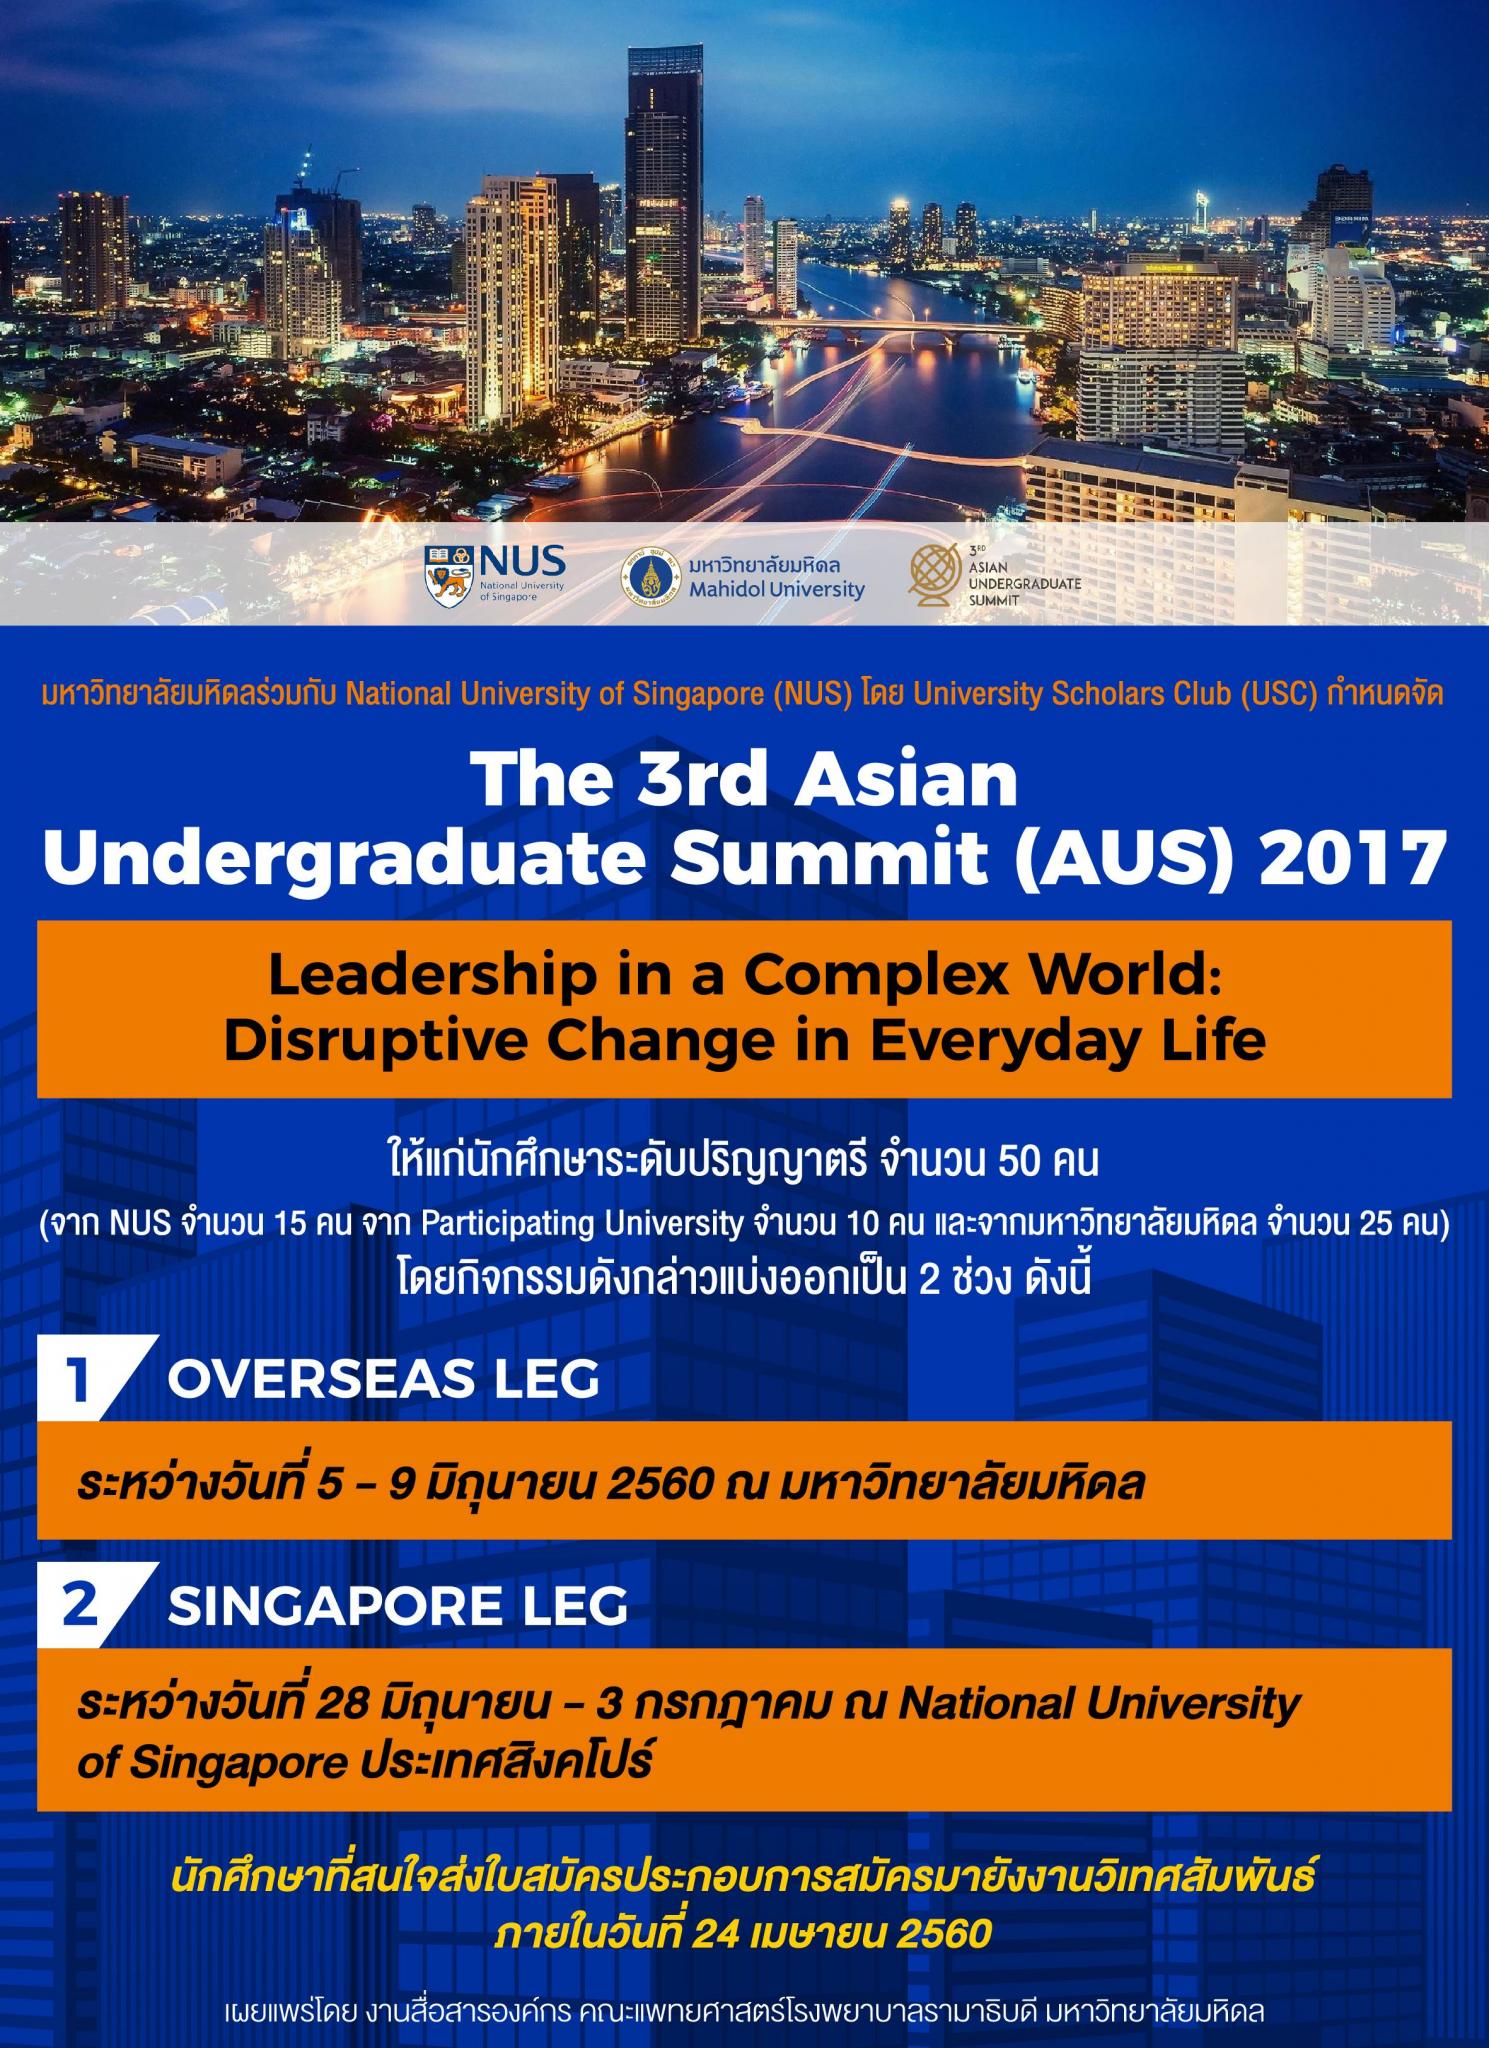 The 3rd Asian Undergraduate Summit (AUS) 2017